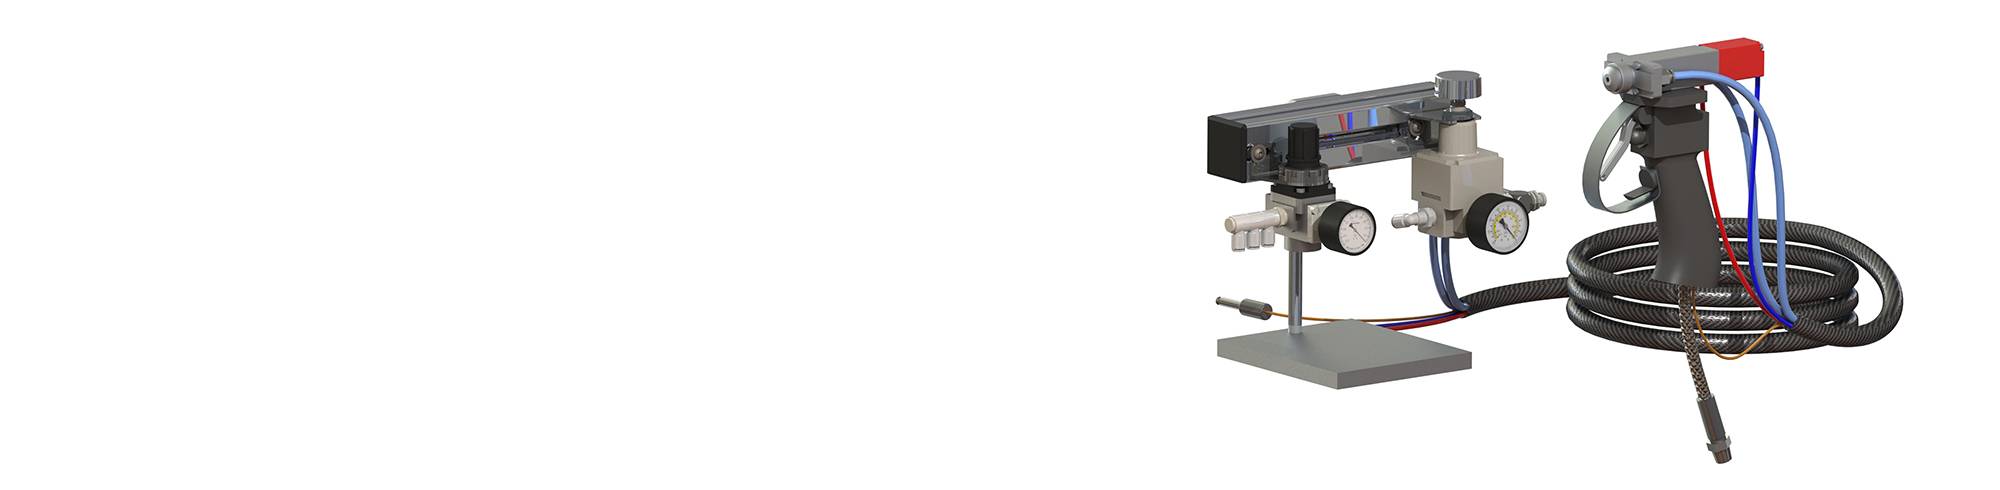 Válvulas pulverizadoras de Dymax para sistemas de de dispensadores automatizados y manuales